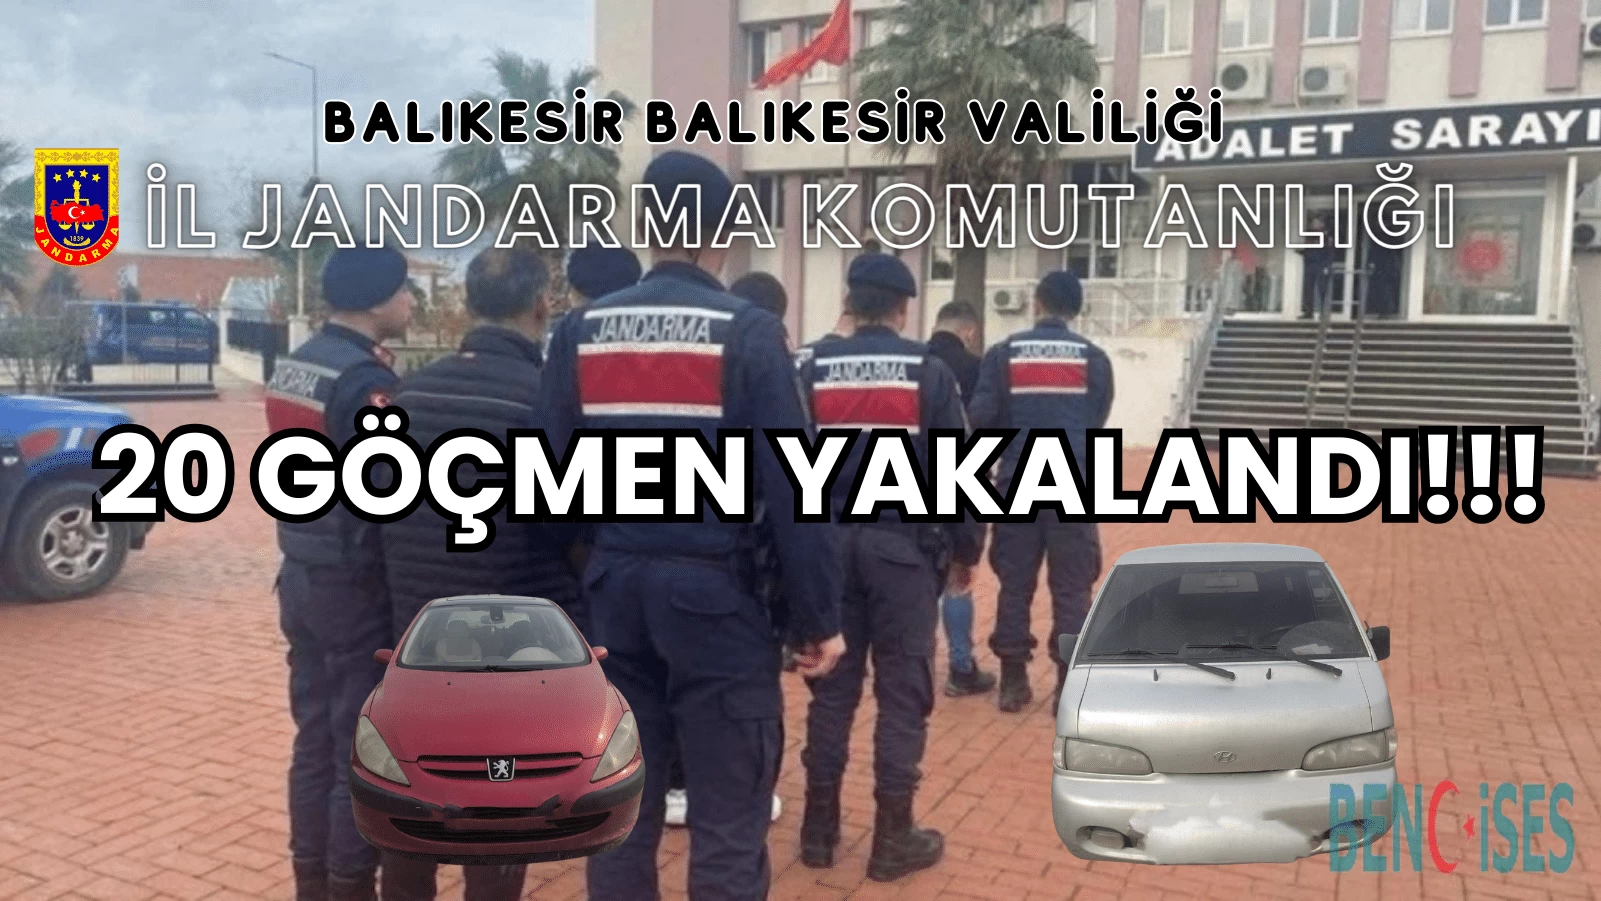 Balıkesir İl Jandarma Komutanlığı, Göçmen Kaçakçılığına Geçit Vermiyor!